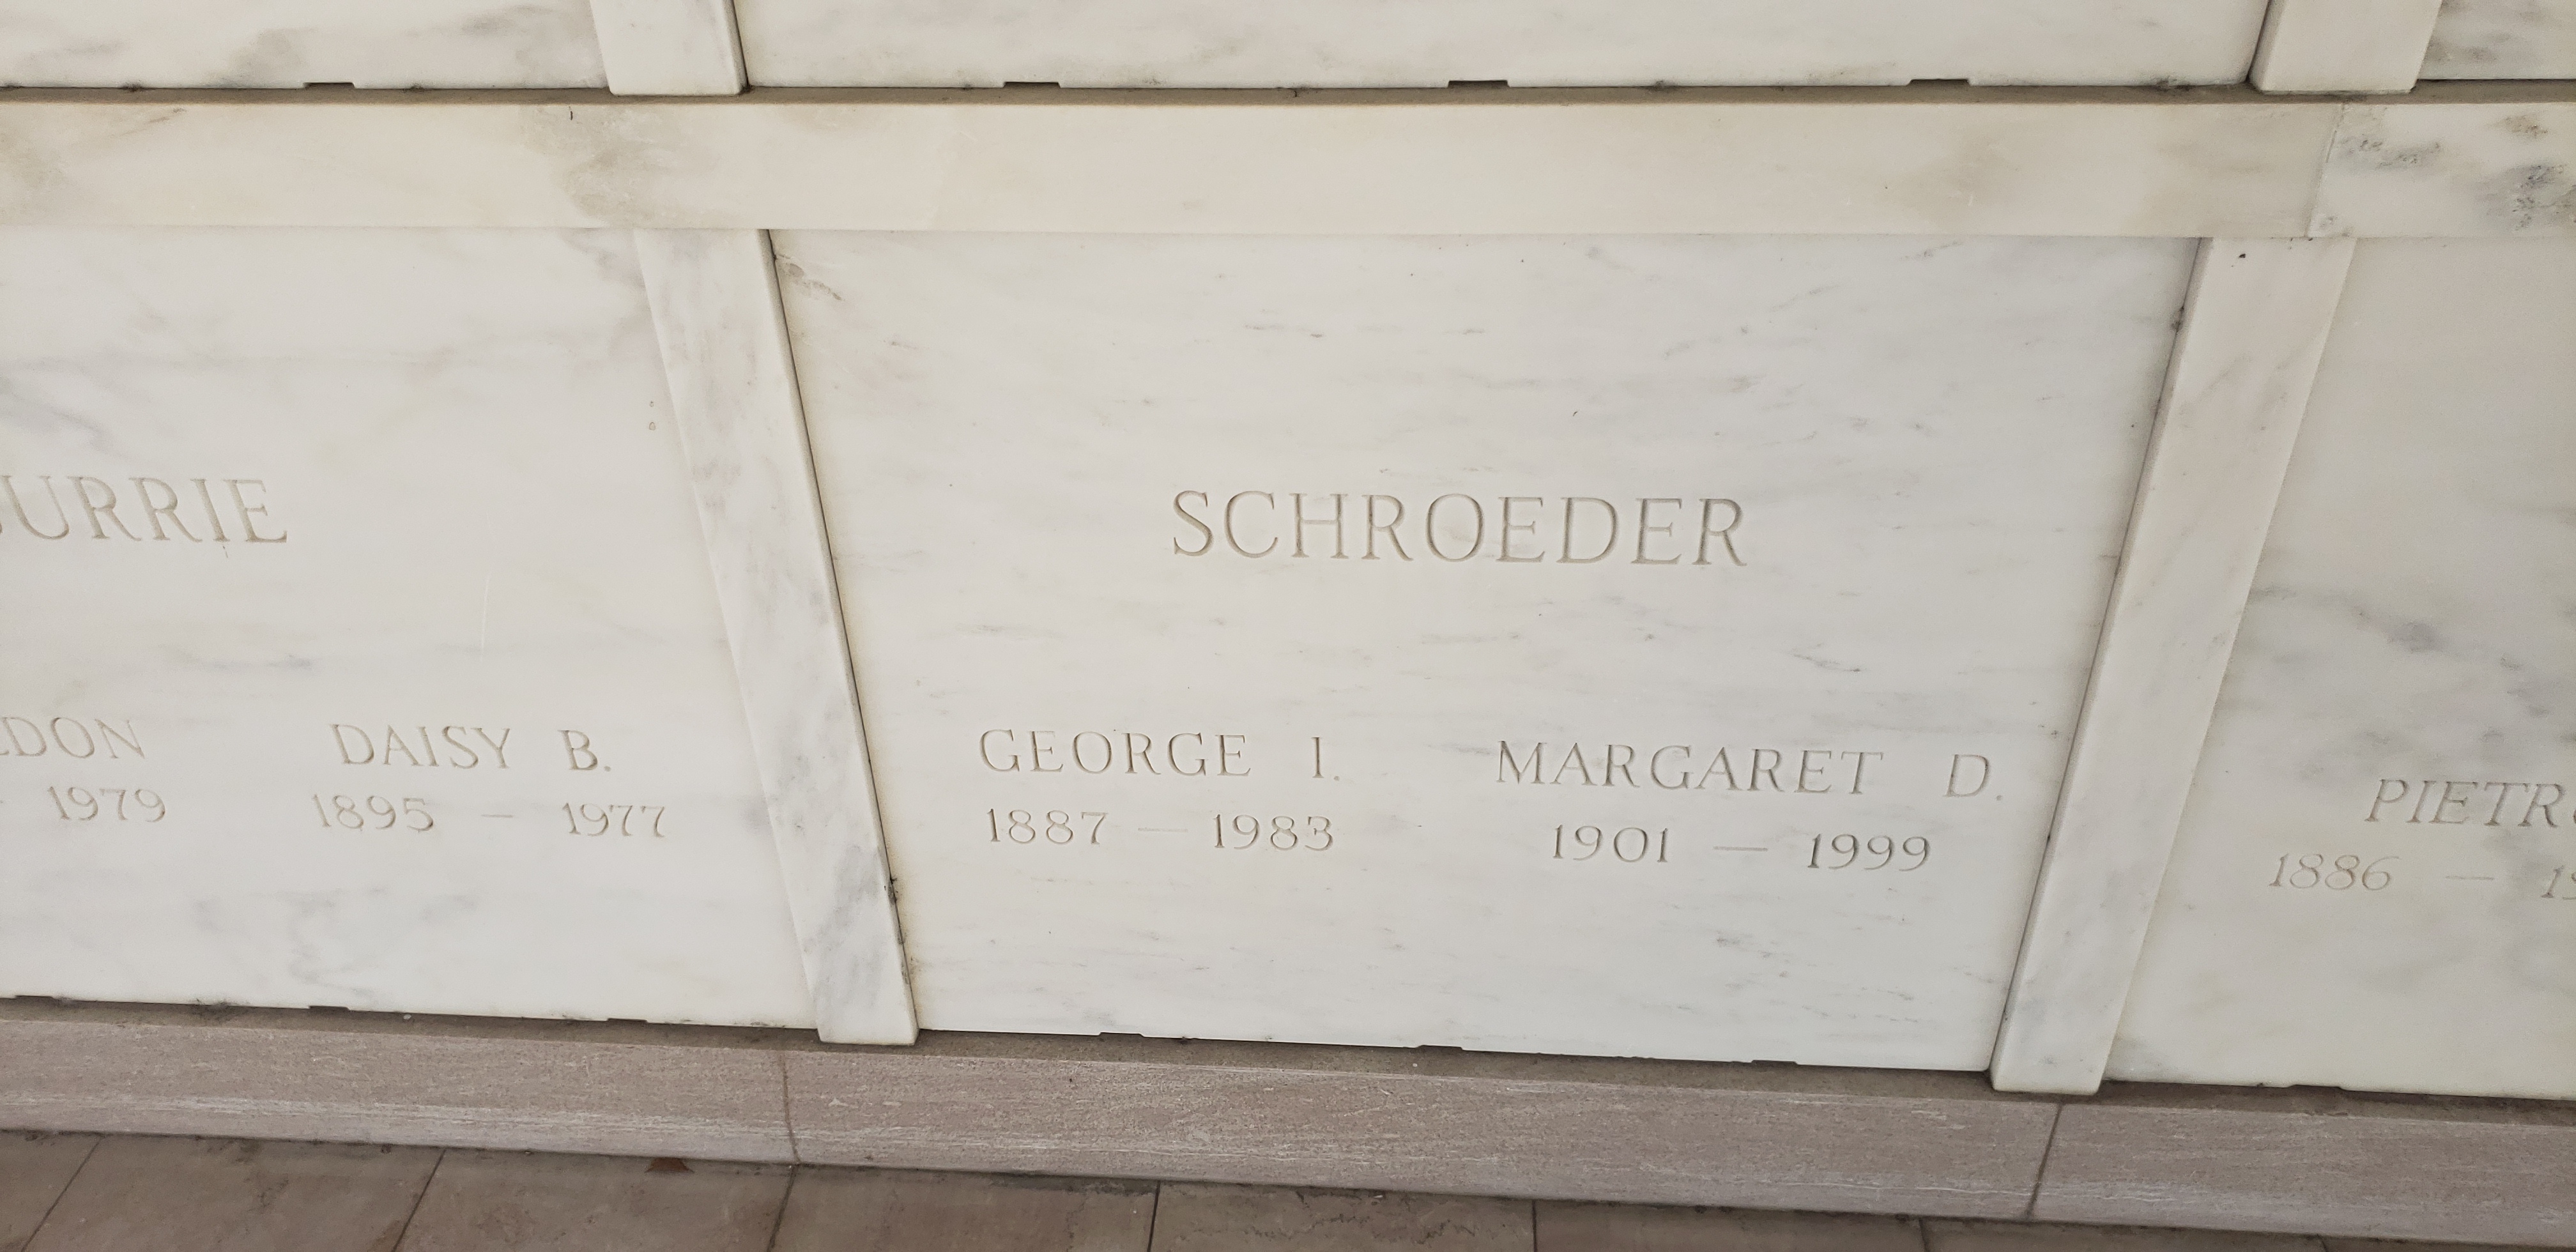 George I Schroeder